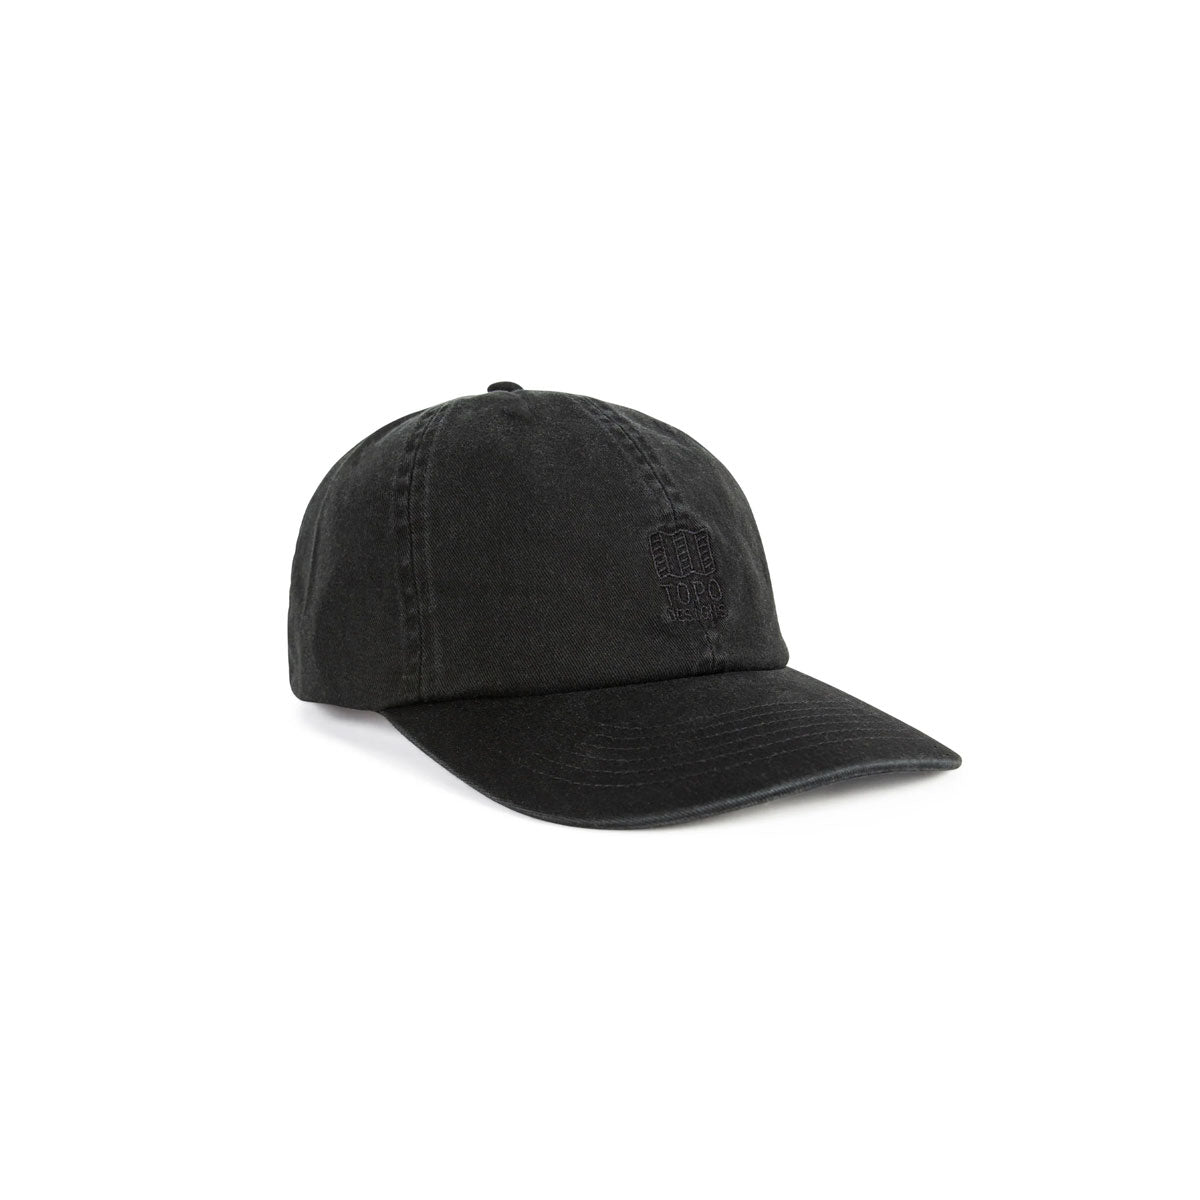 Topo Designs : Mountain Ball Cap : Black